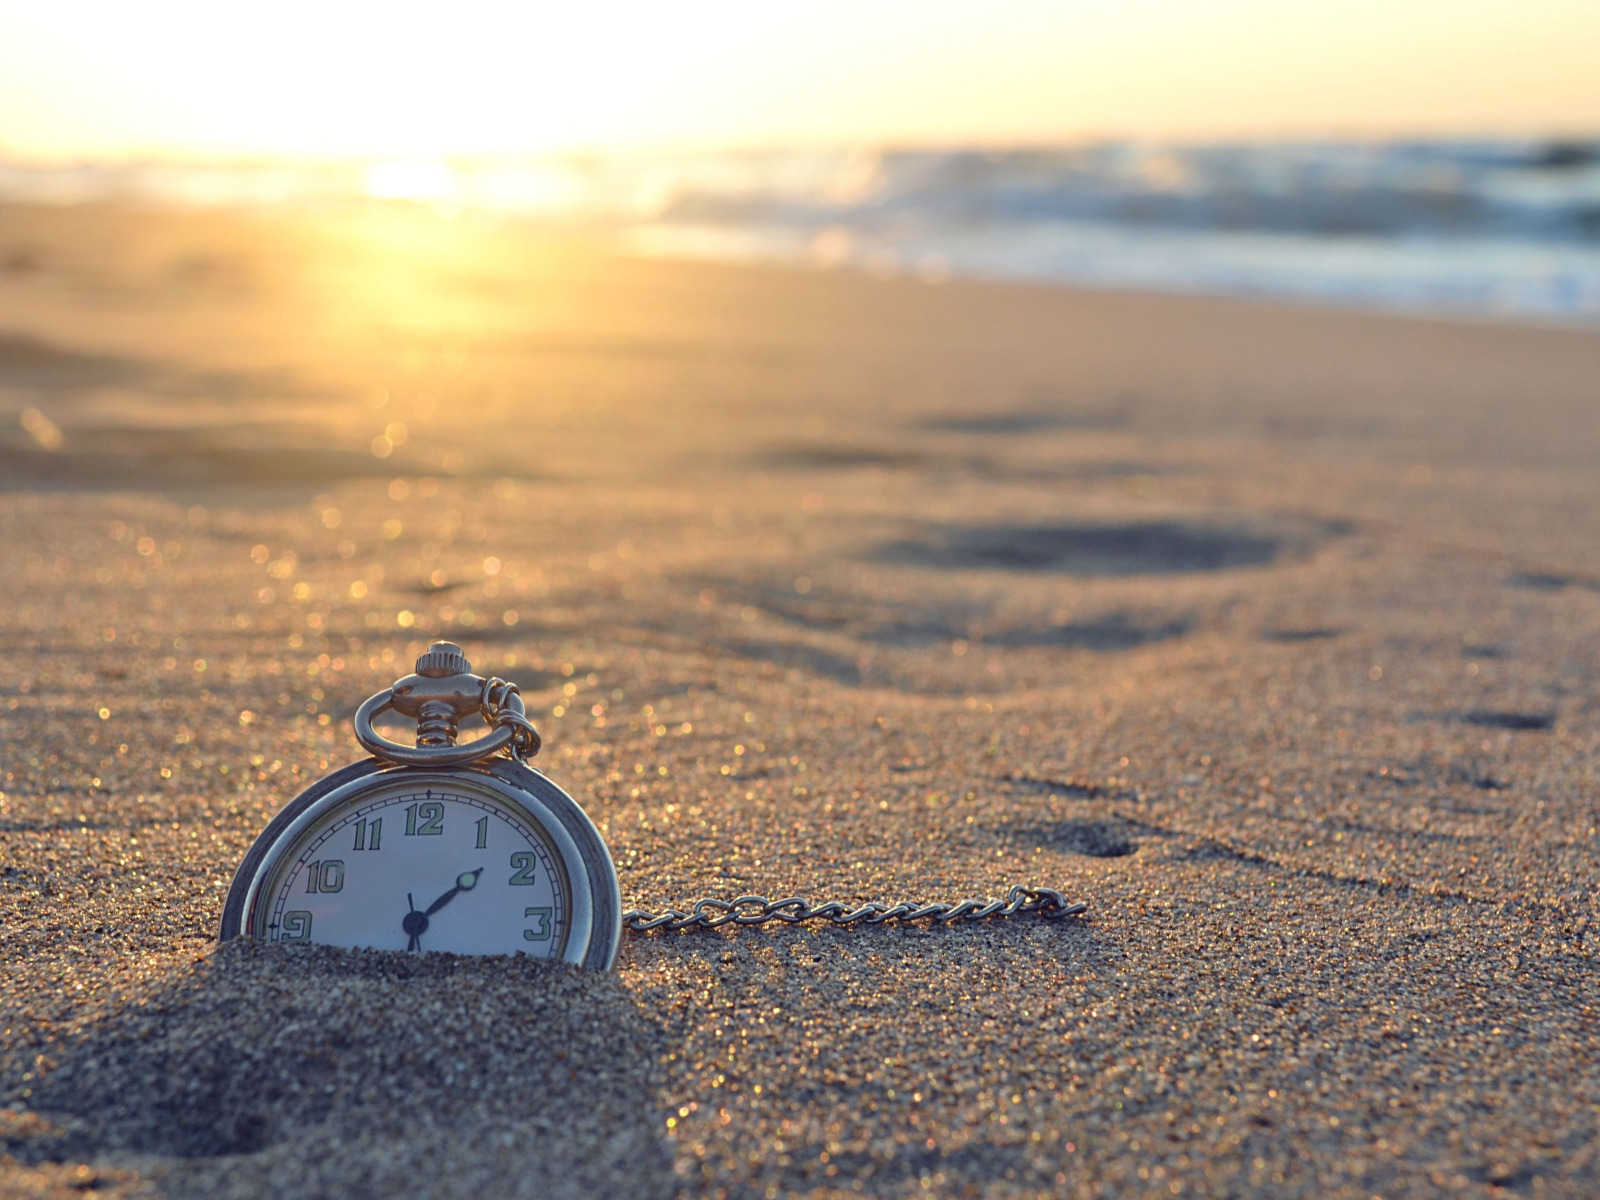 Часы в песке. Часы на фоне моря. Уходящее время. Часы на природе. C ожидание времени